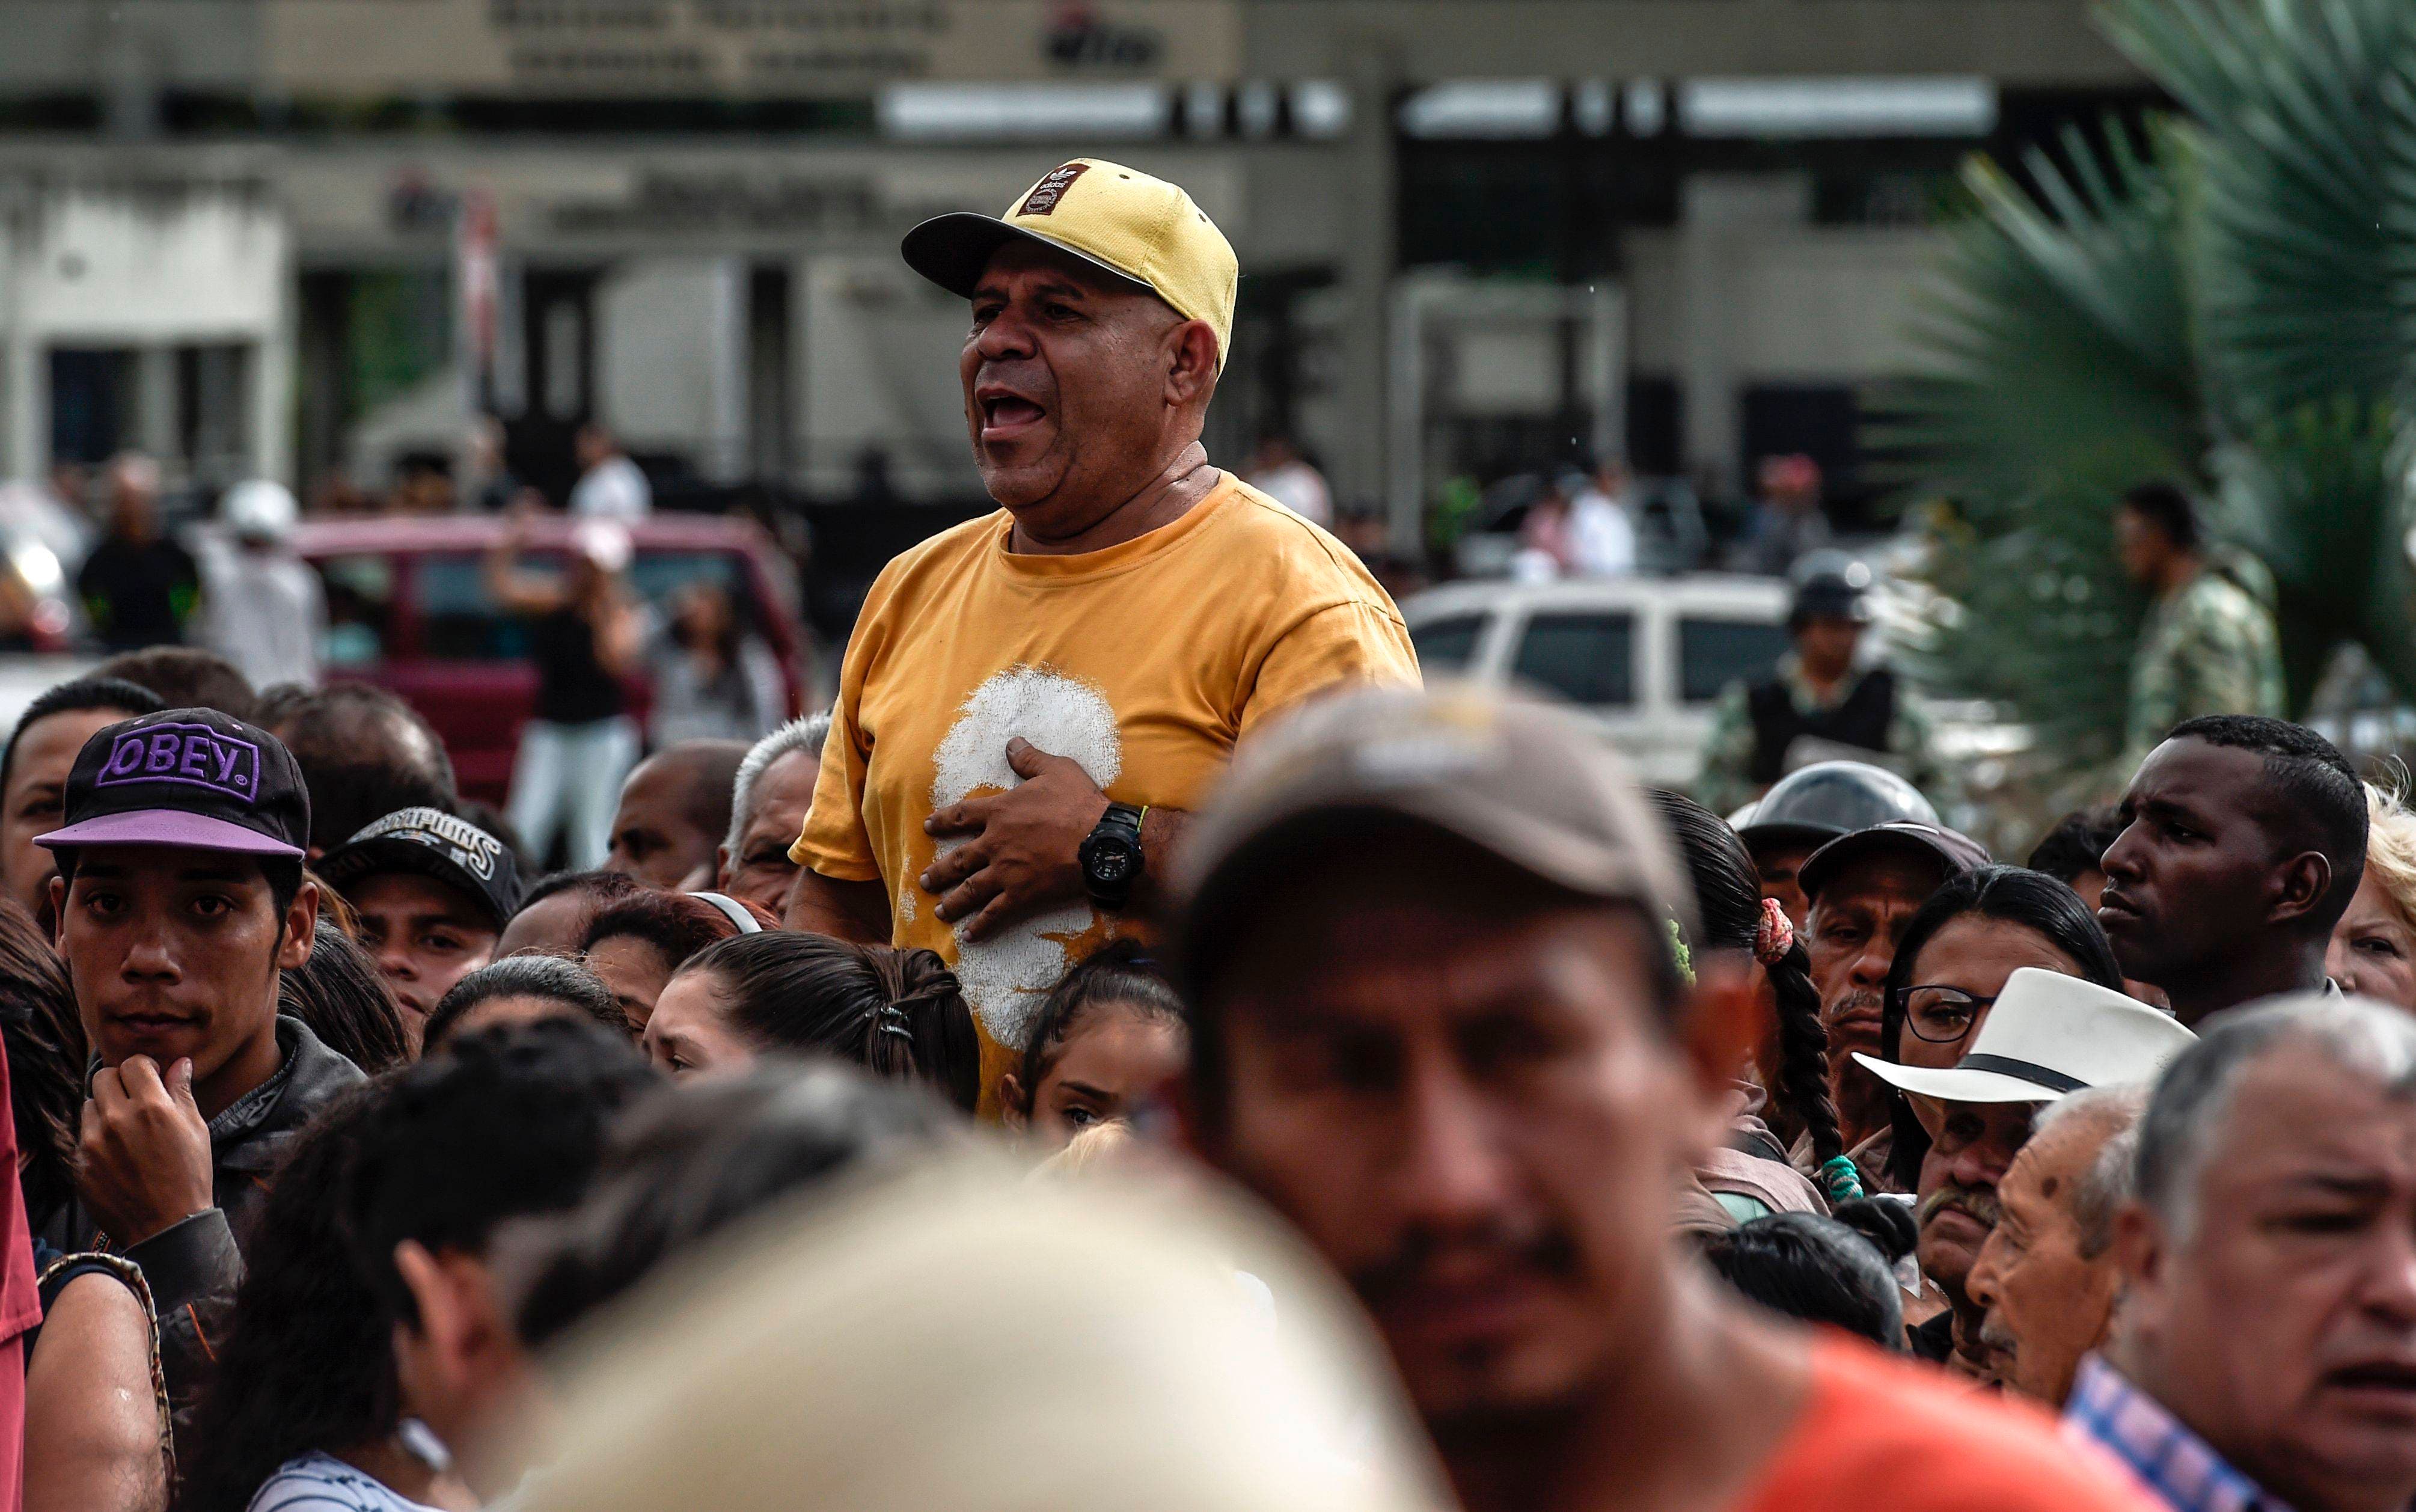 Video: Gases, balas, insultos: fuerzas del orden reprimen a opositores en Venezuela